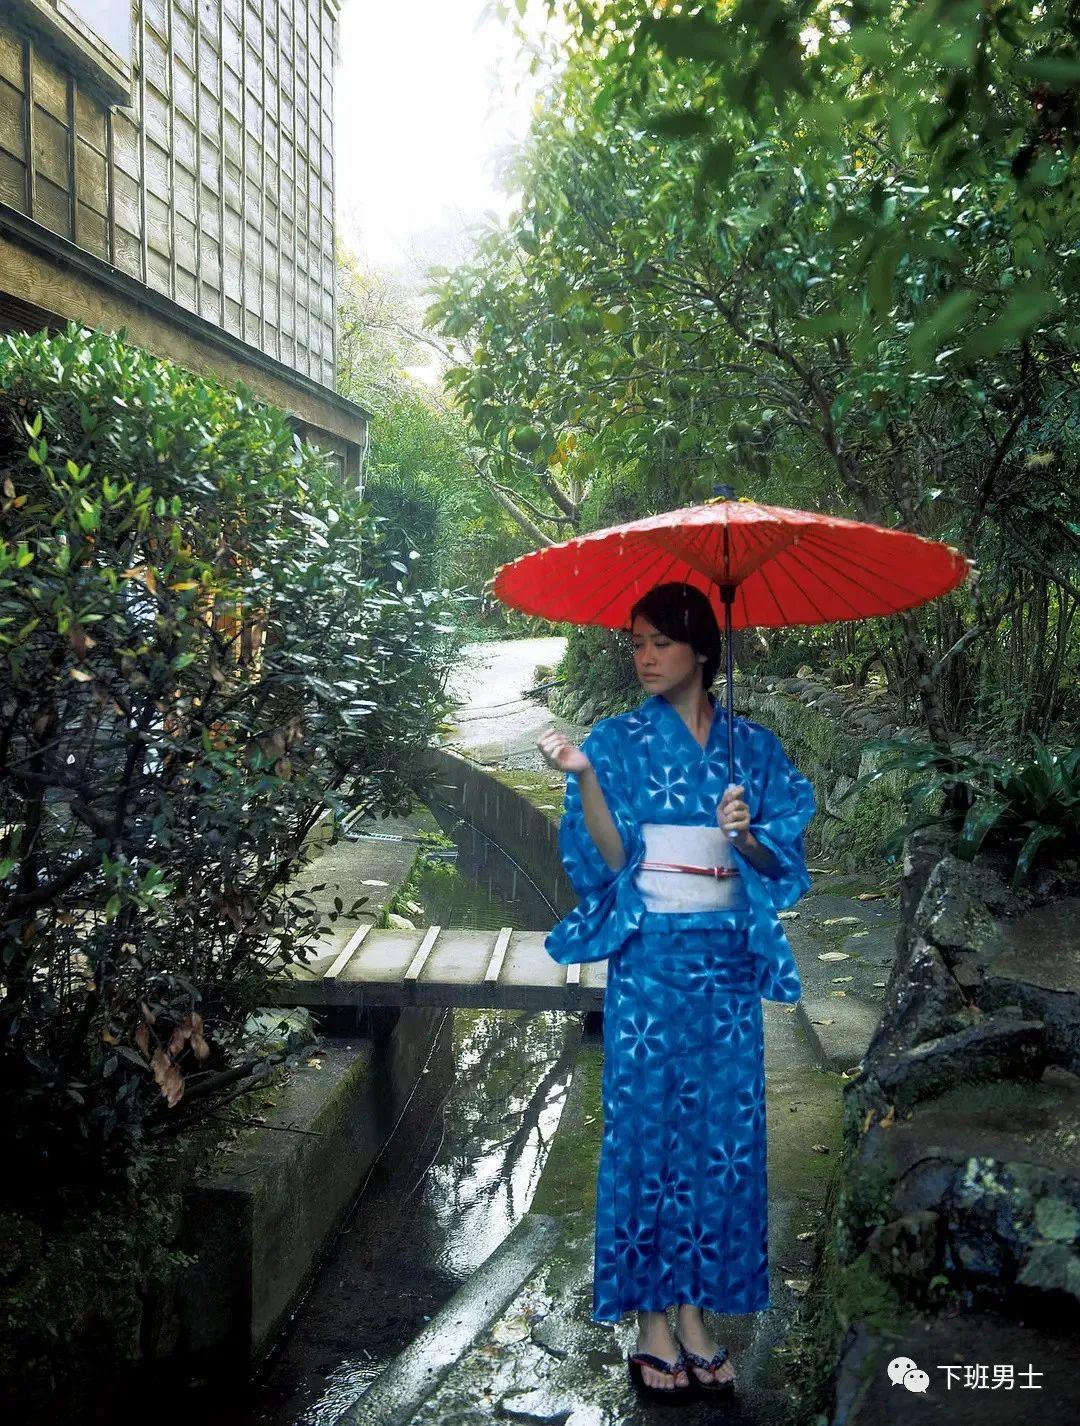 日本女明星飞鸟凛（Rin Asuka、あすか りん）资料简介及高清写真图集